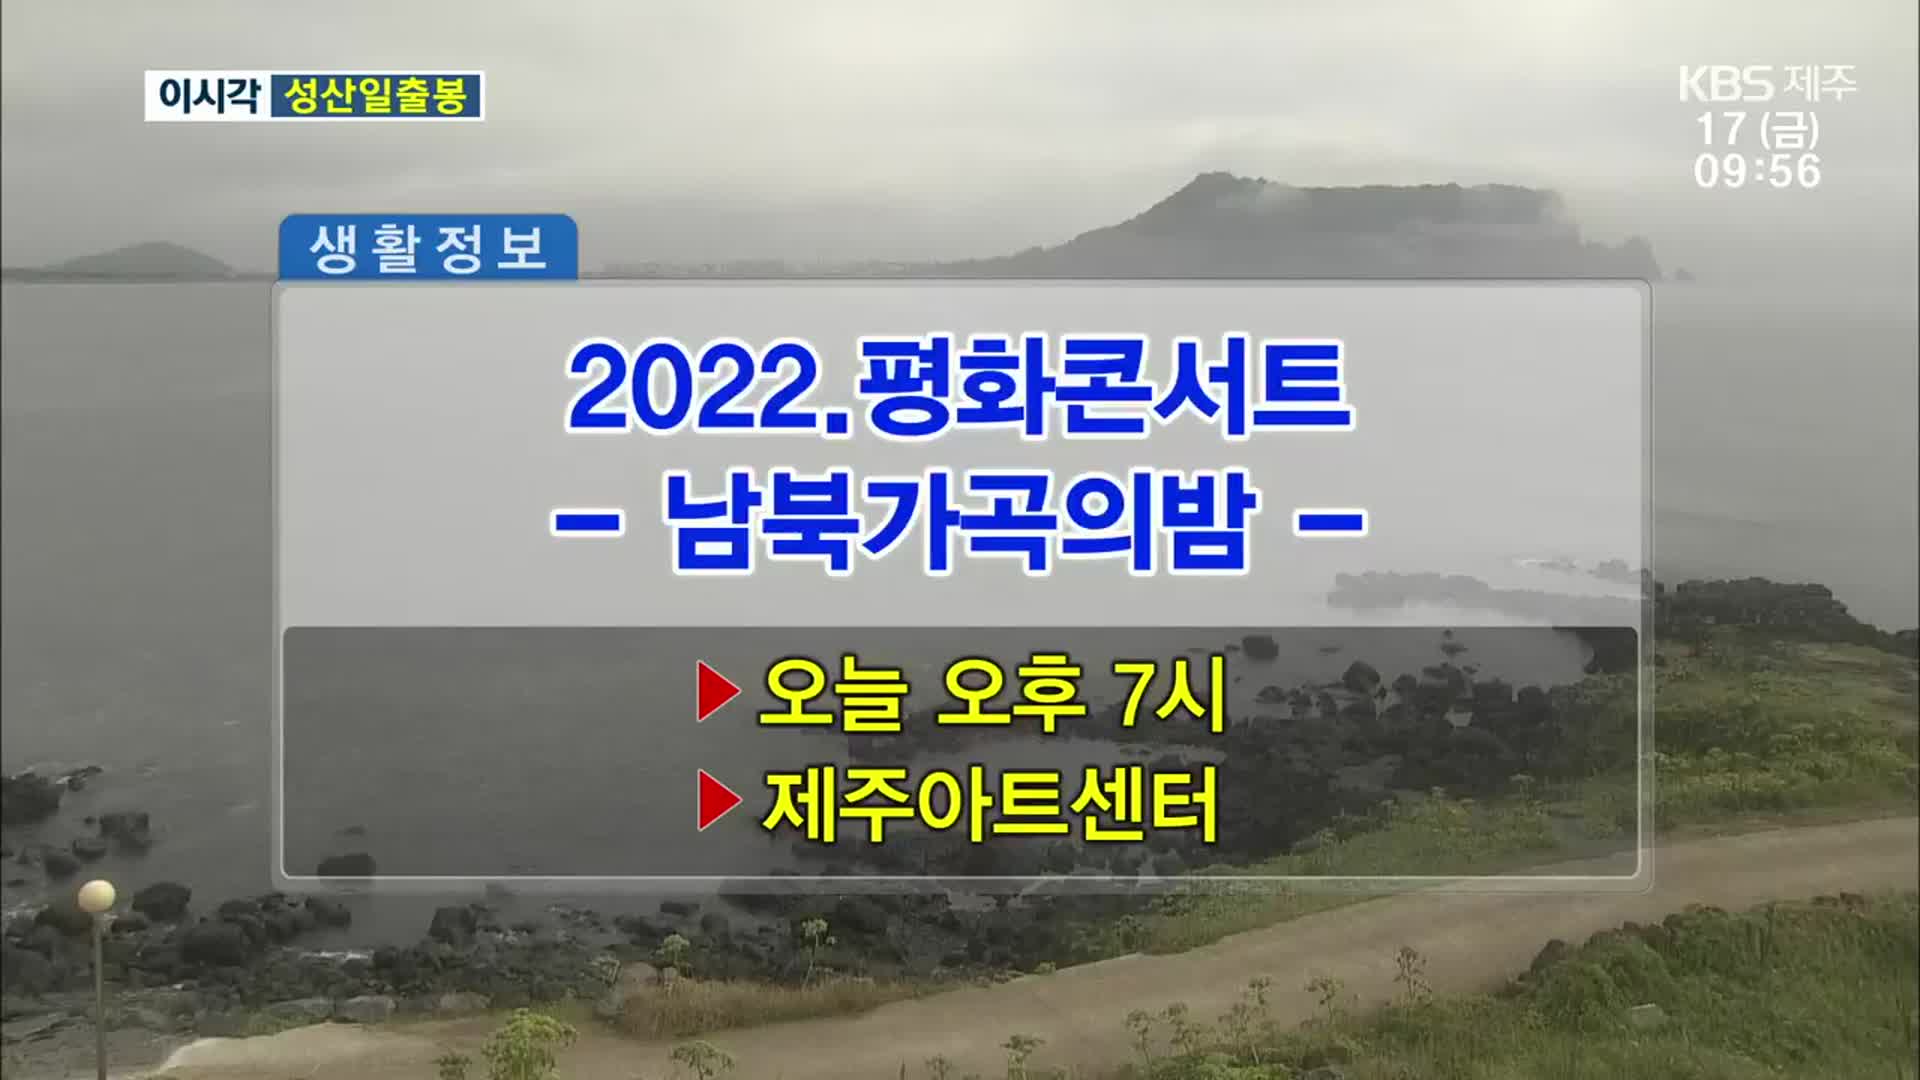 2022. 평화콘서트 ‘남북가곡의밤’ 외